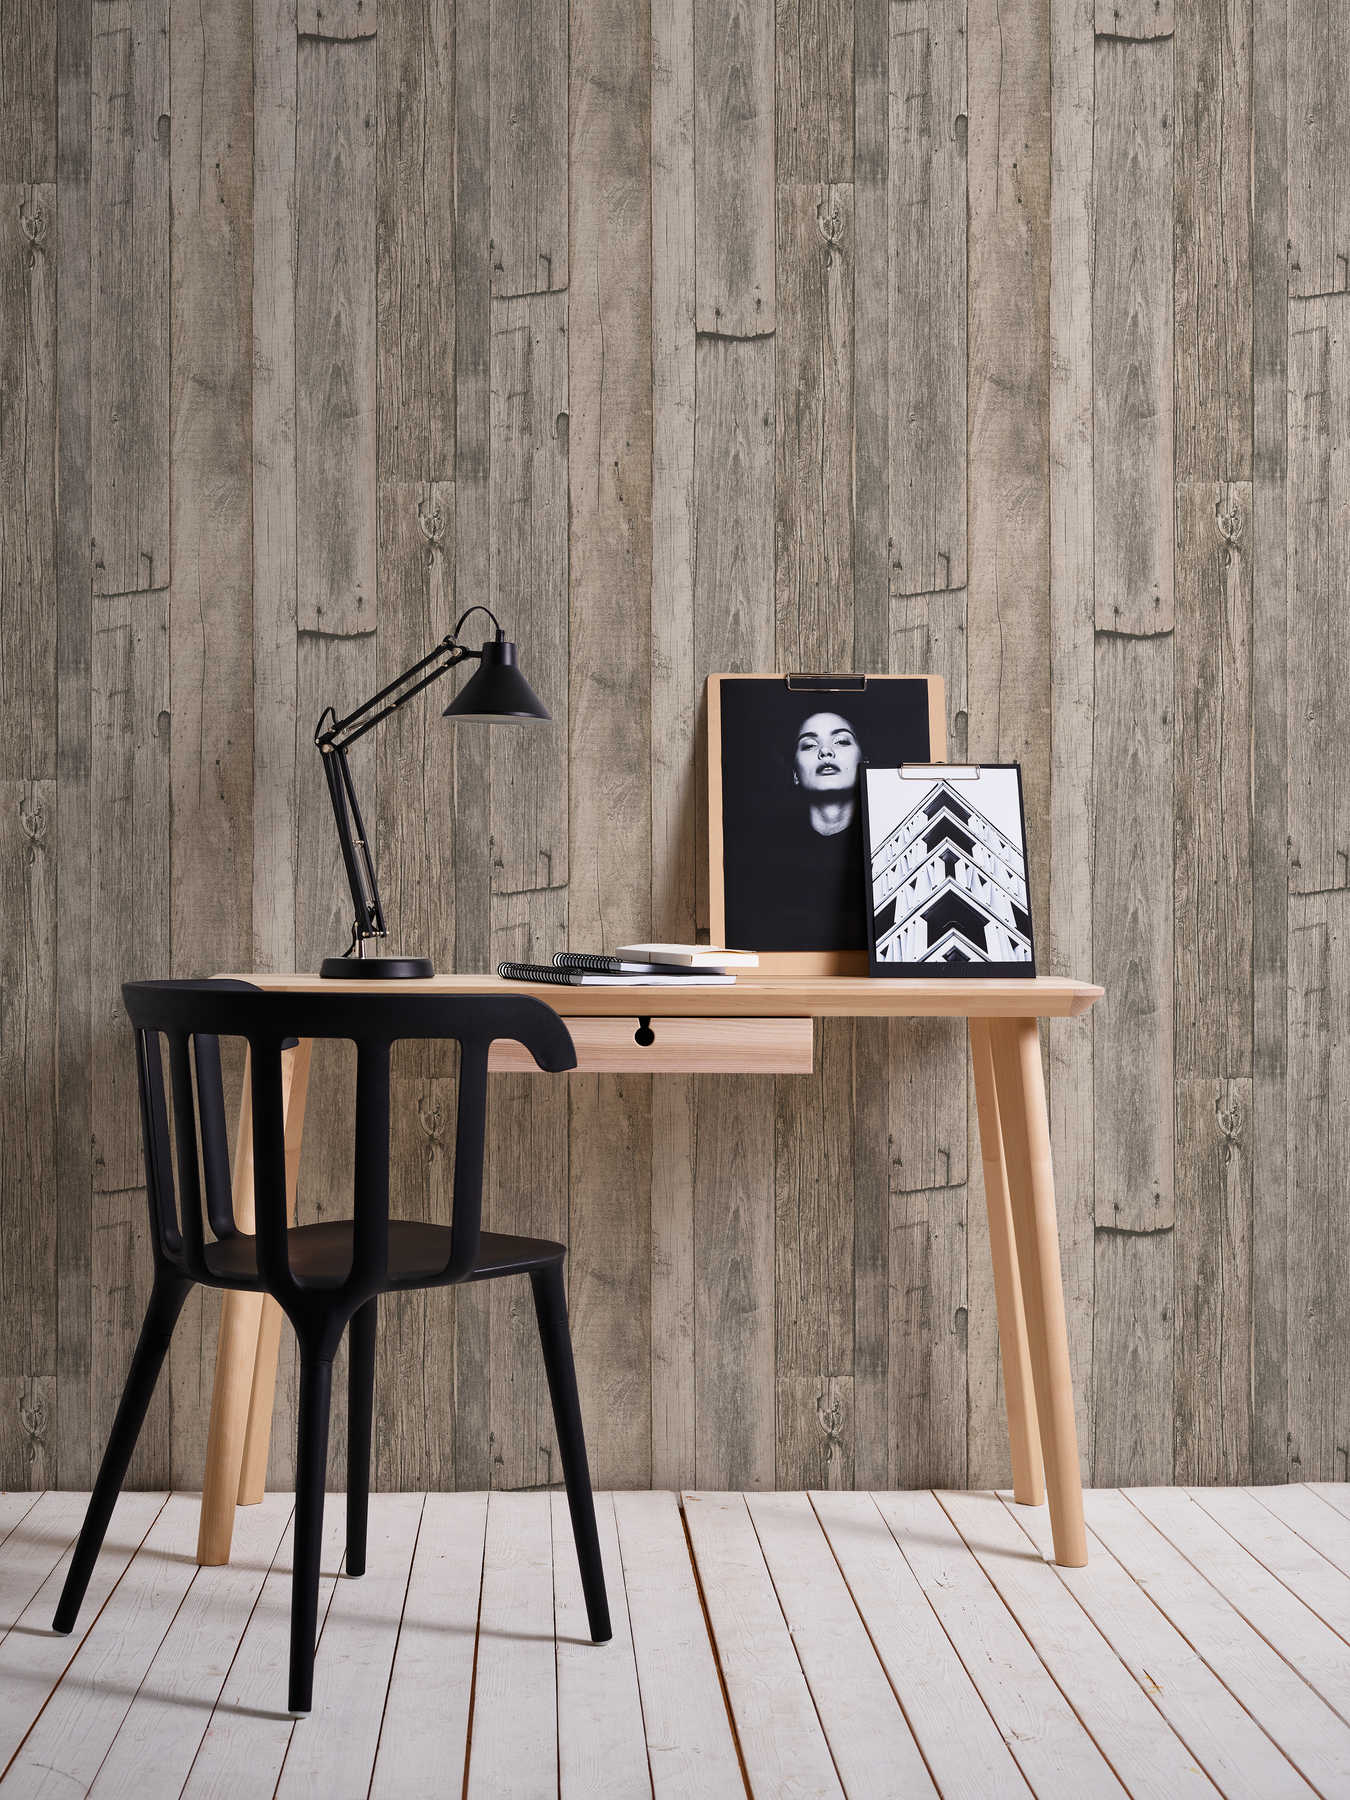             Houten behang met planken in rustiek industrieel design - beige, zwart, crème
        